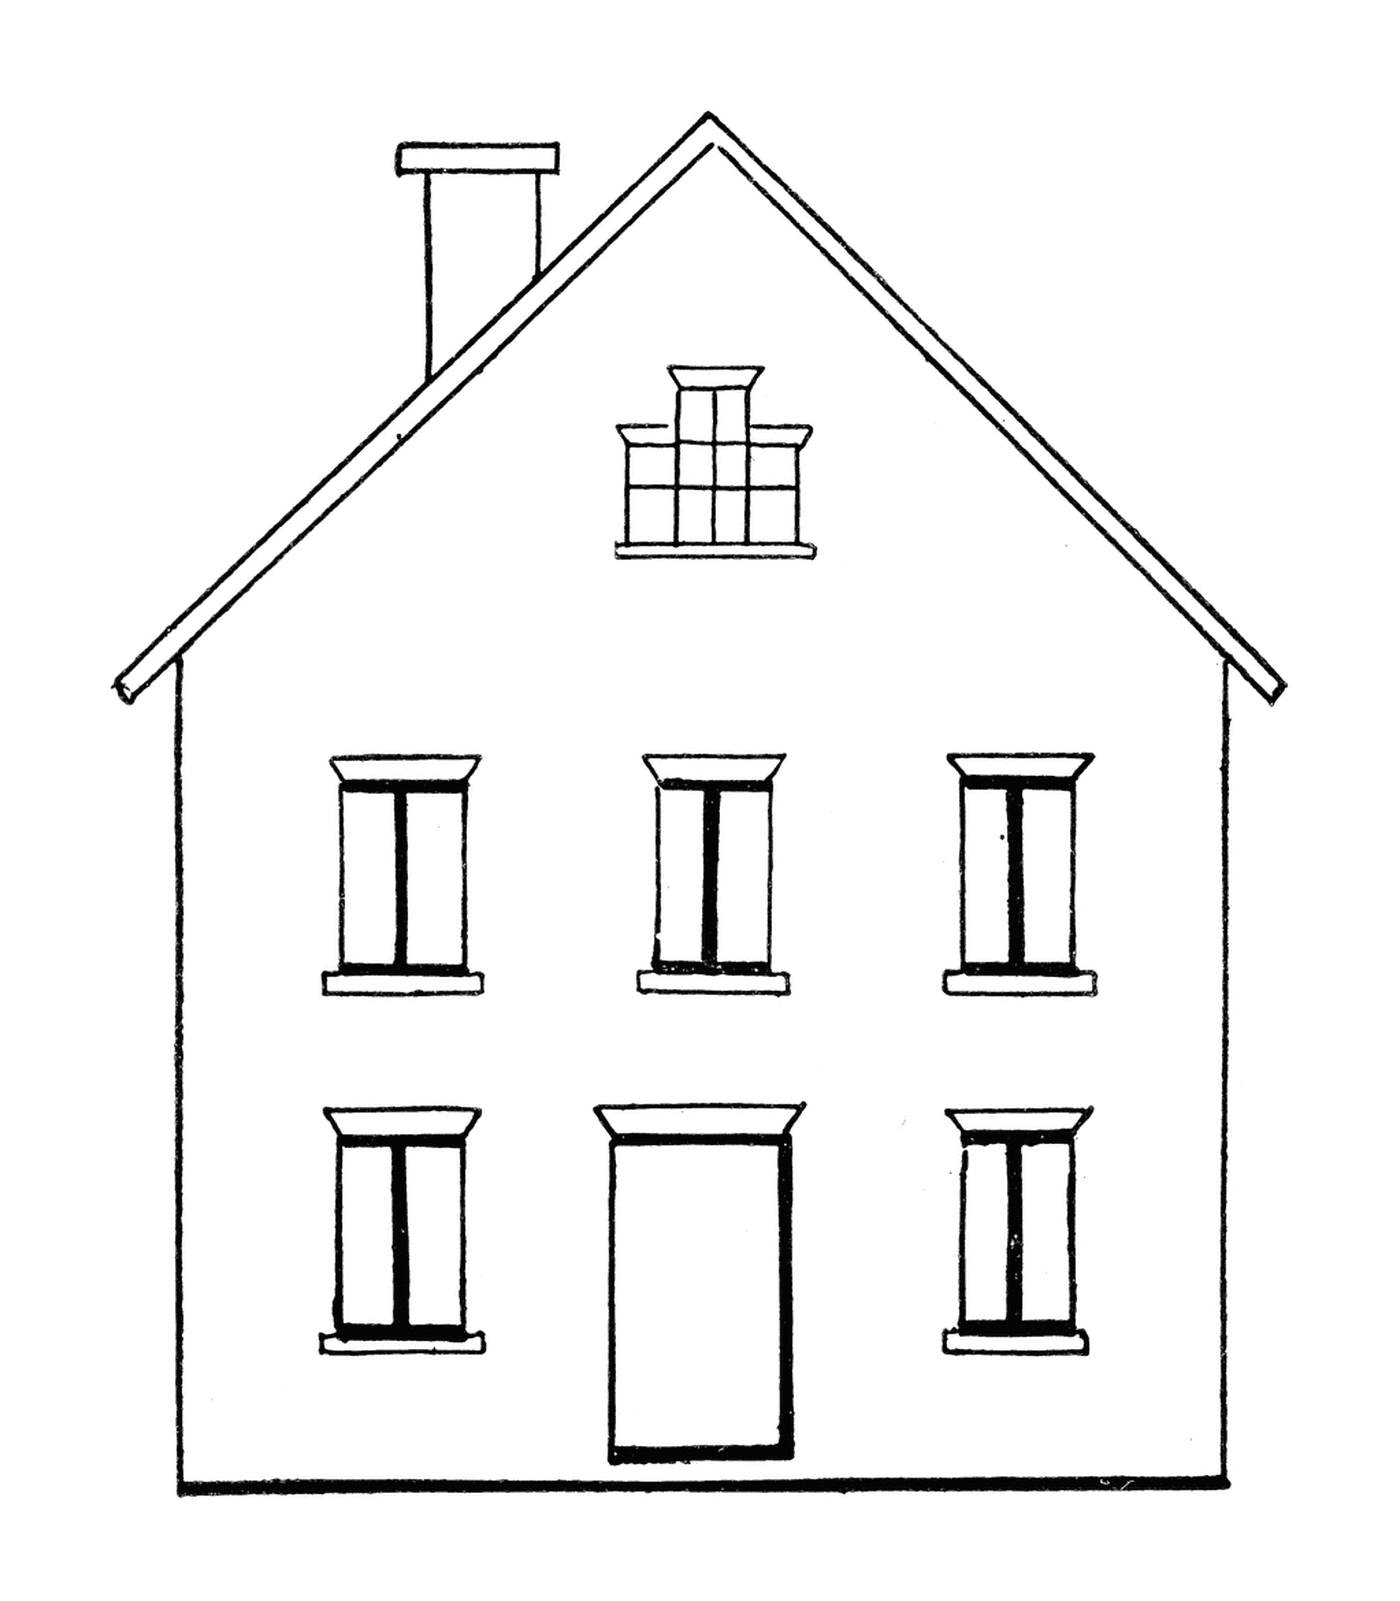  छ: खिड़कियों से सफेद रंग का घर 